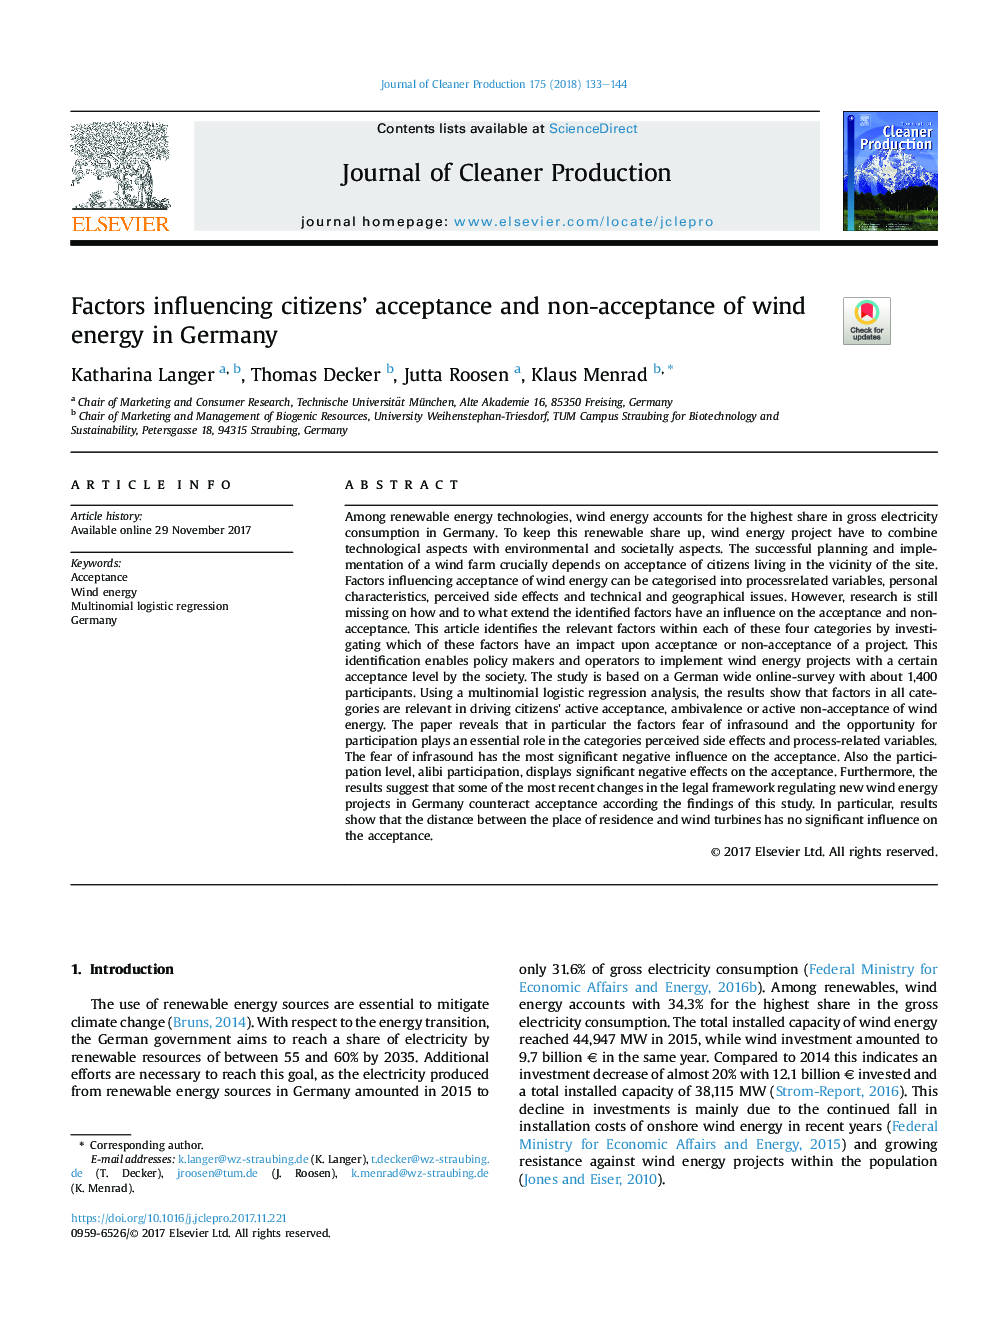 عوامل موثر بر پذیرش و عدم پذیرش شهروندان از انرژی باد در آلمان 